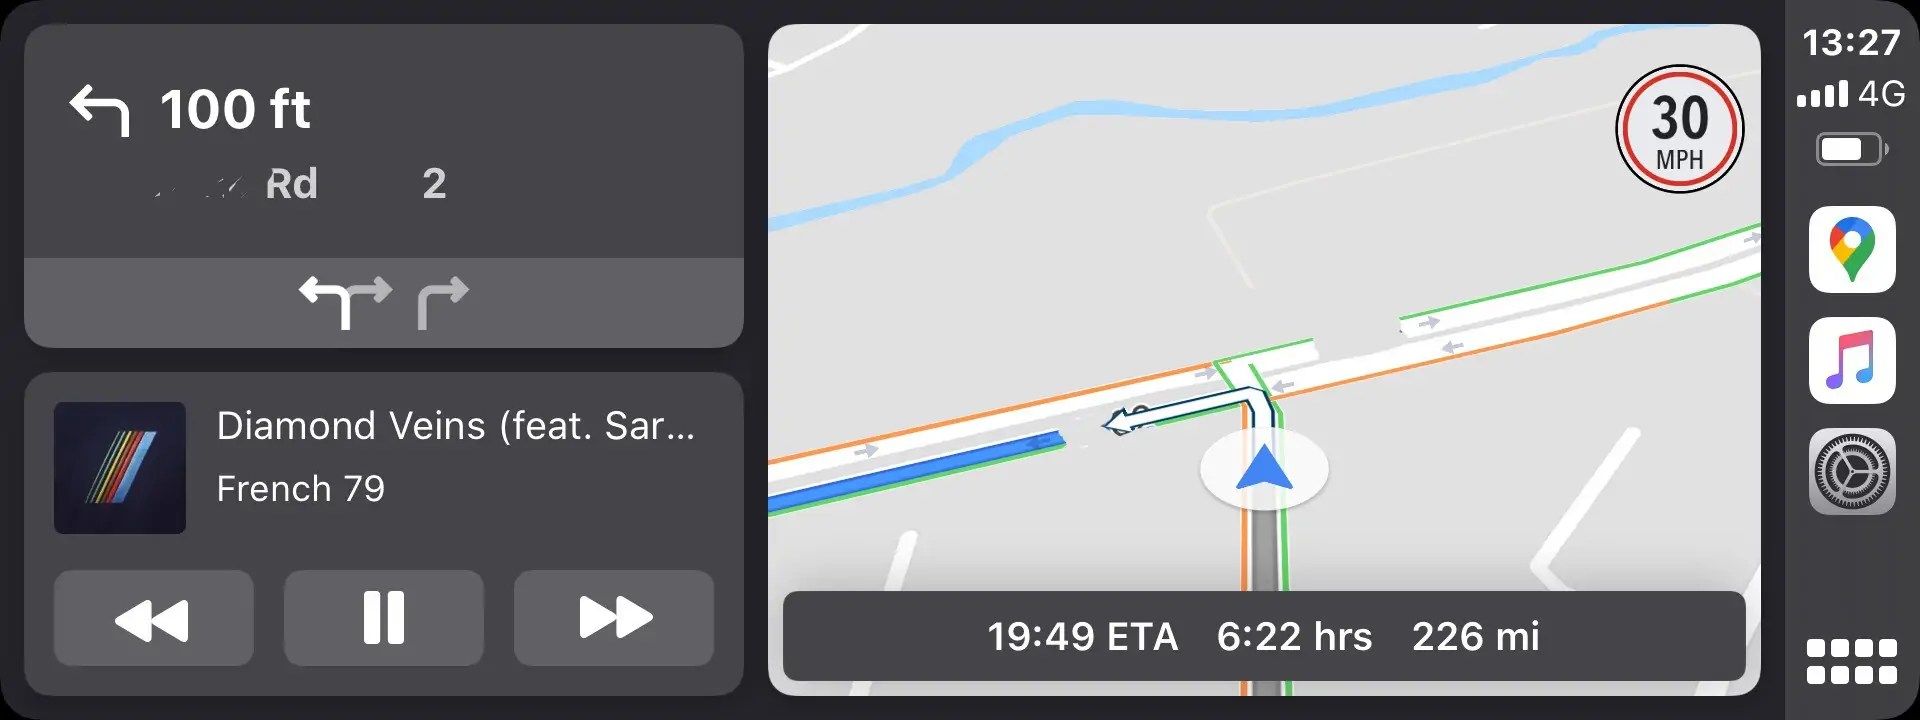 تحديث خرائط Google ببيانات جديده لحدود سرعة السيارات تفاديا للحوادث  